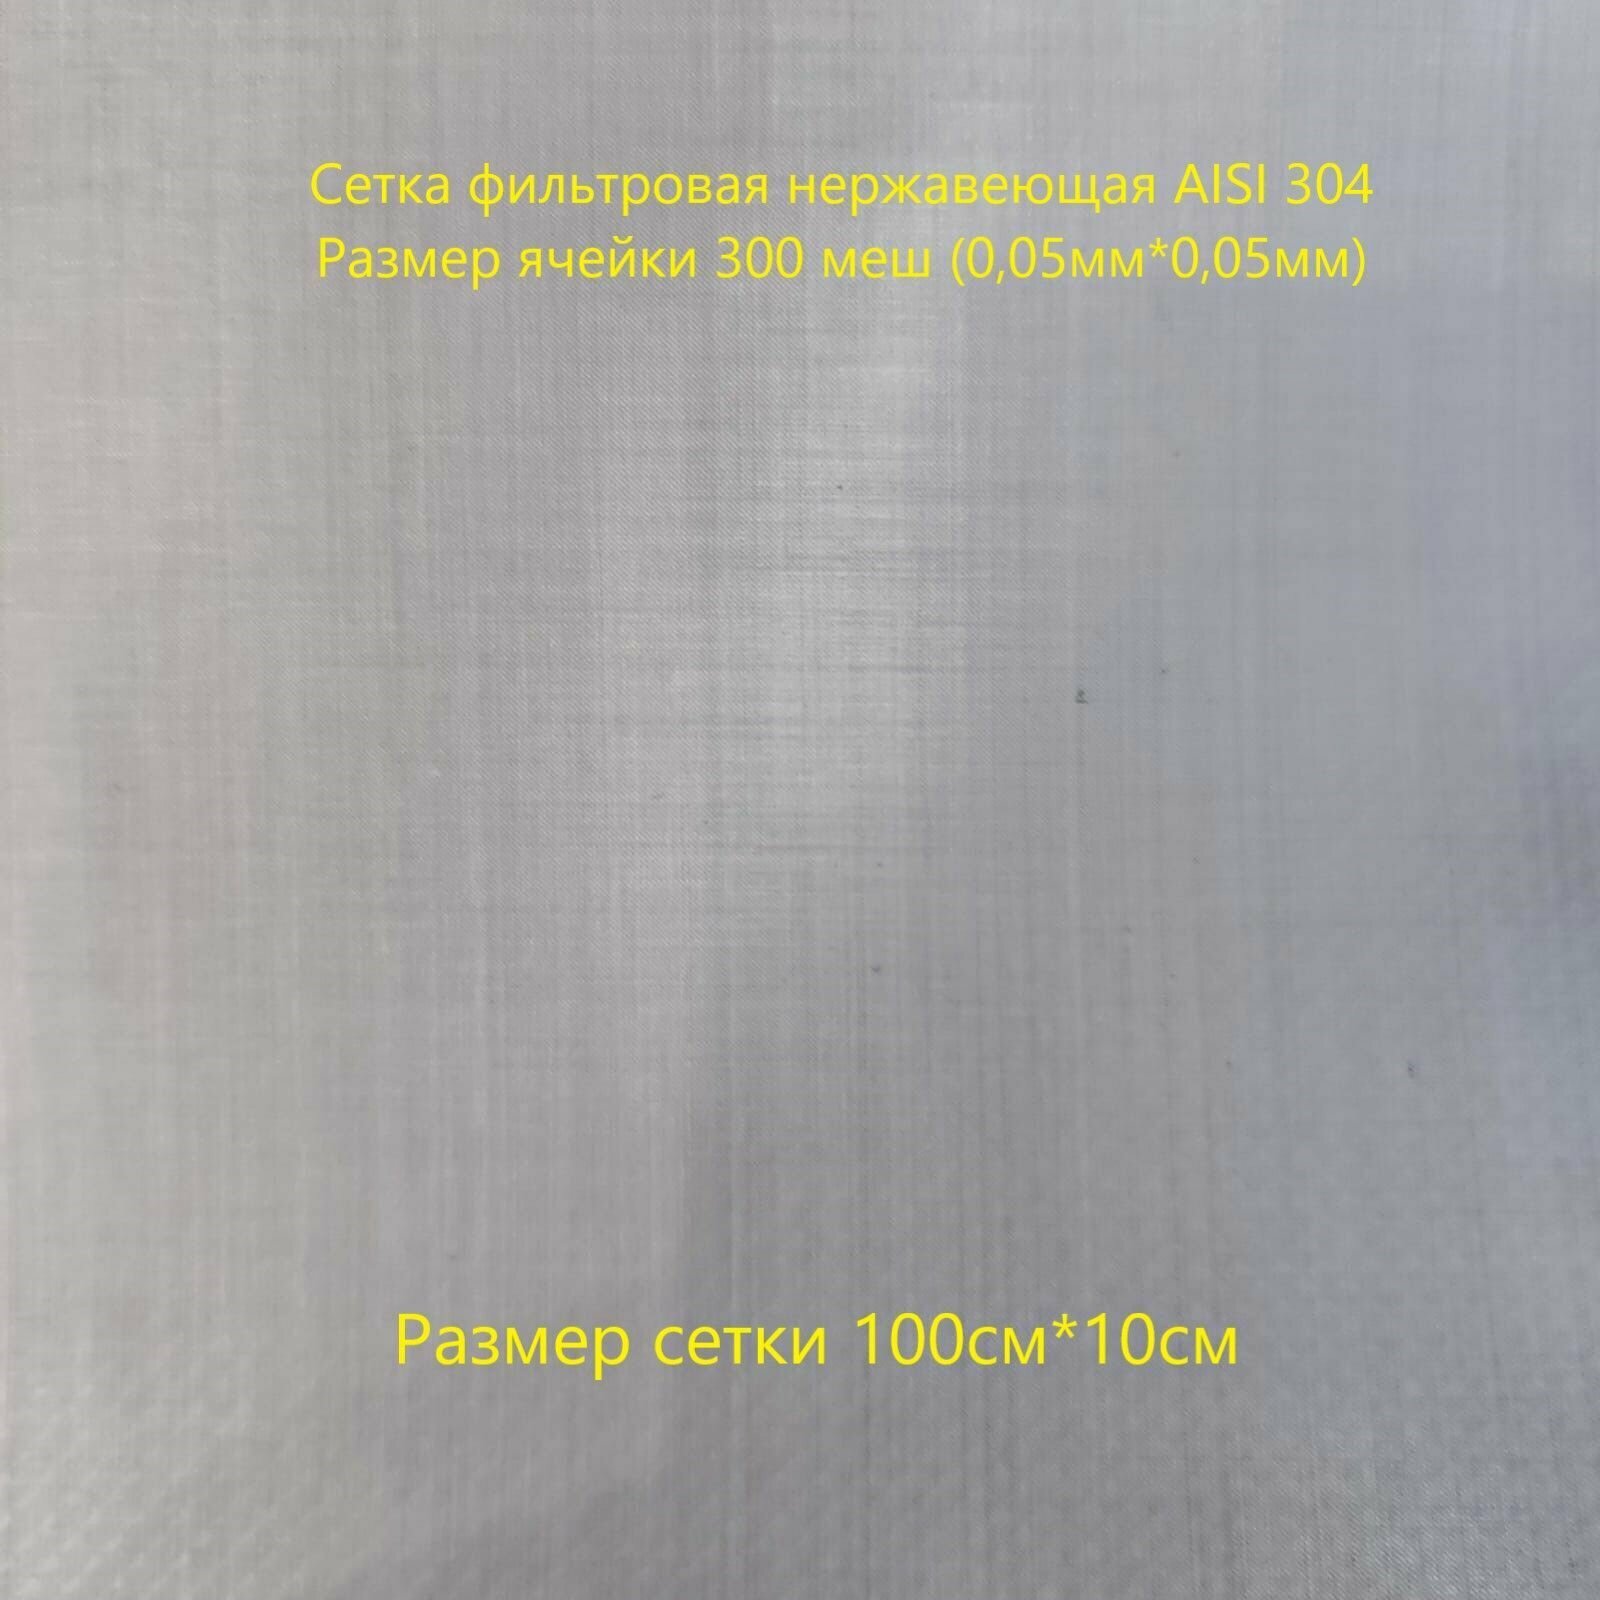 Сетка фильтровая 300 меш (0,05*0,05) - фотография № 1